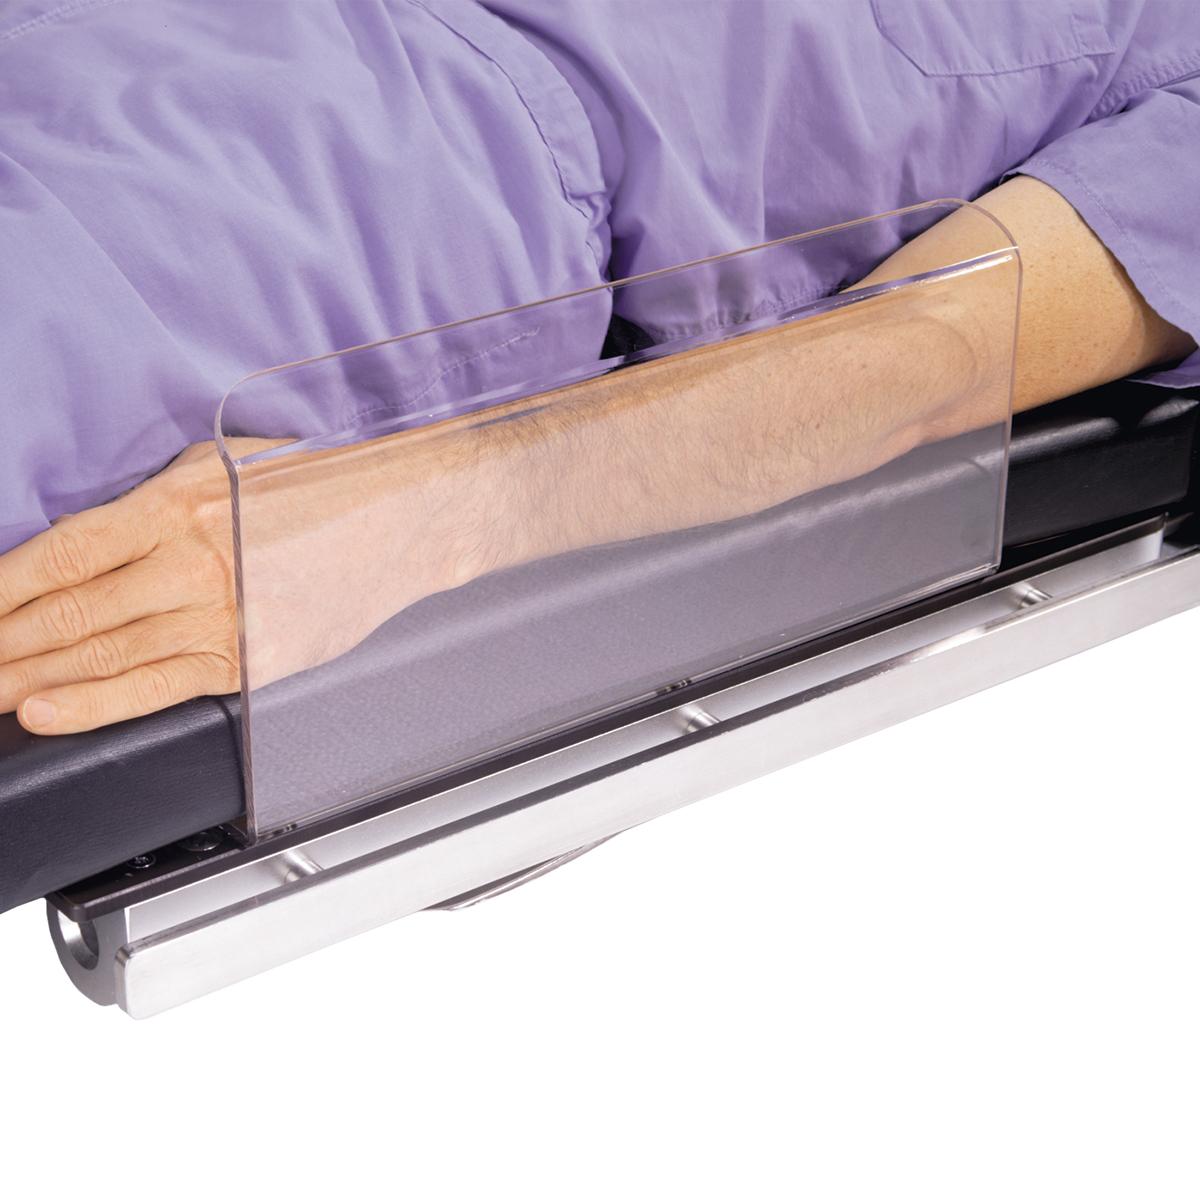 Osłony ramion Arm Shield, w użyciu (z pacjentem)